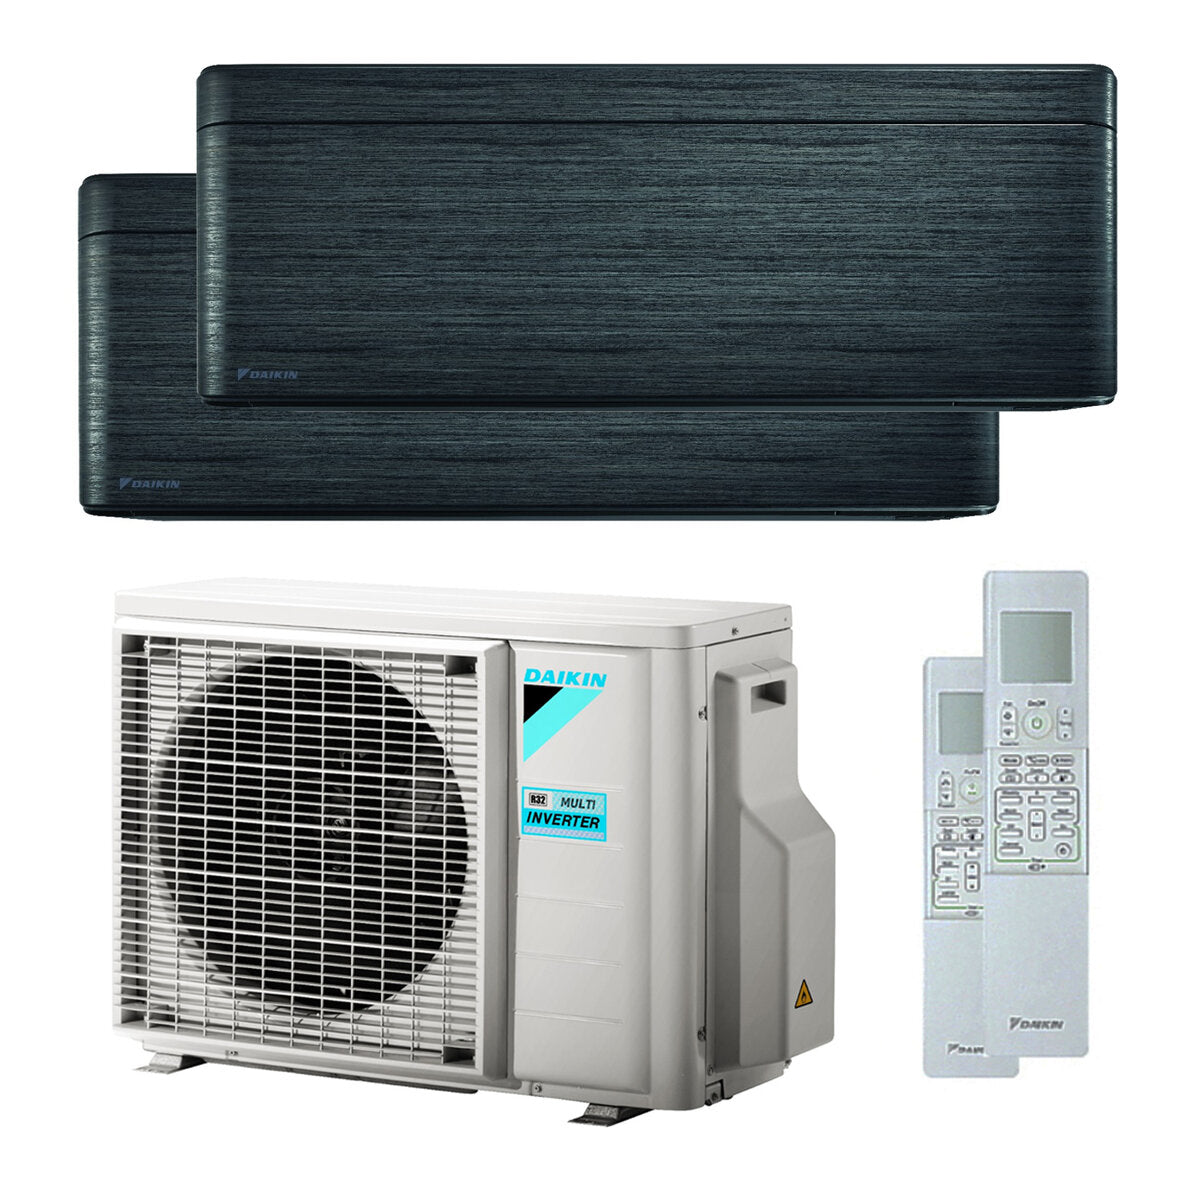 Daikin Stylish dual split air conditioner 7000 + 15000 BTU inverter A +++ wifi outdoor unit 5.0 kW